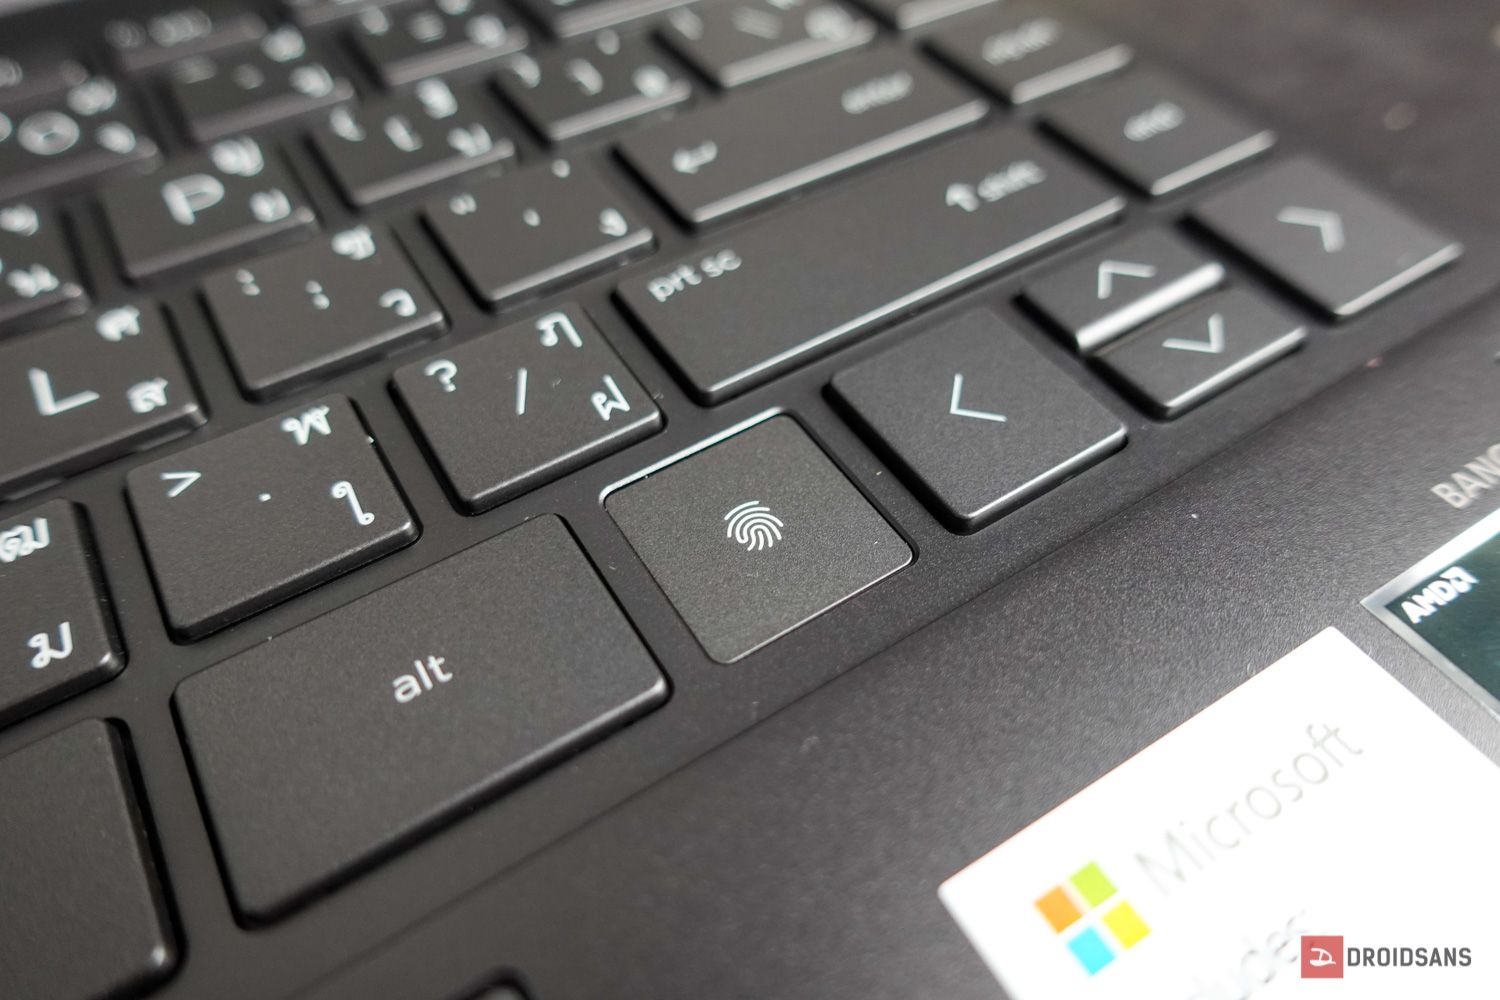 Review | HP Envy x360 13 โน้ตบุ๊ค 2-in-1 เรียบหรู บางเบา สำหรับสายครีเอเตอร์ พร้อมติดตั้ง Microsoft Office Home & Student 2019 ฟรี!